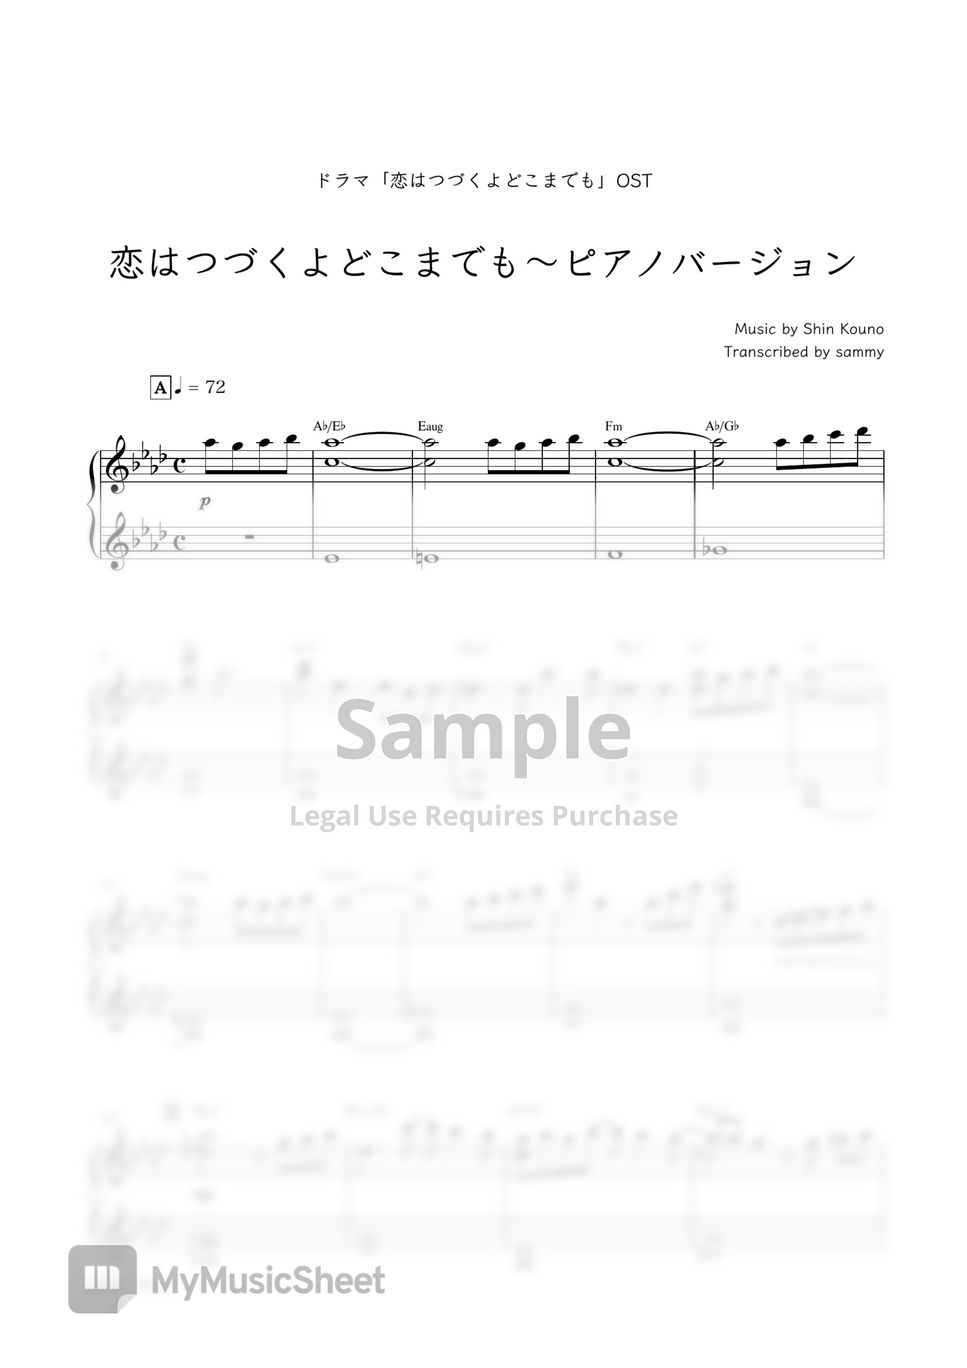 日剧《将恋爱进行到底 (恋はつづくよどこまでも)》OST - An Incurable Case of Love~Piano Version (恋はつづくよどこまでも〜ピアノバージョン) by sammy